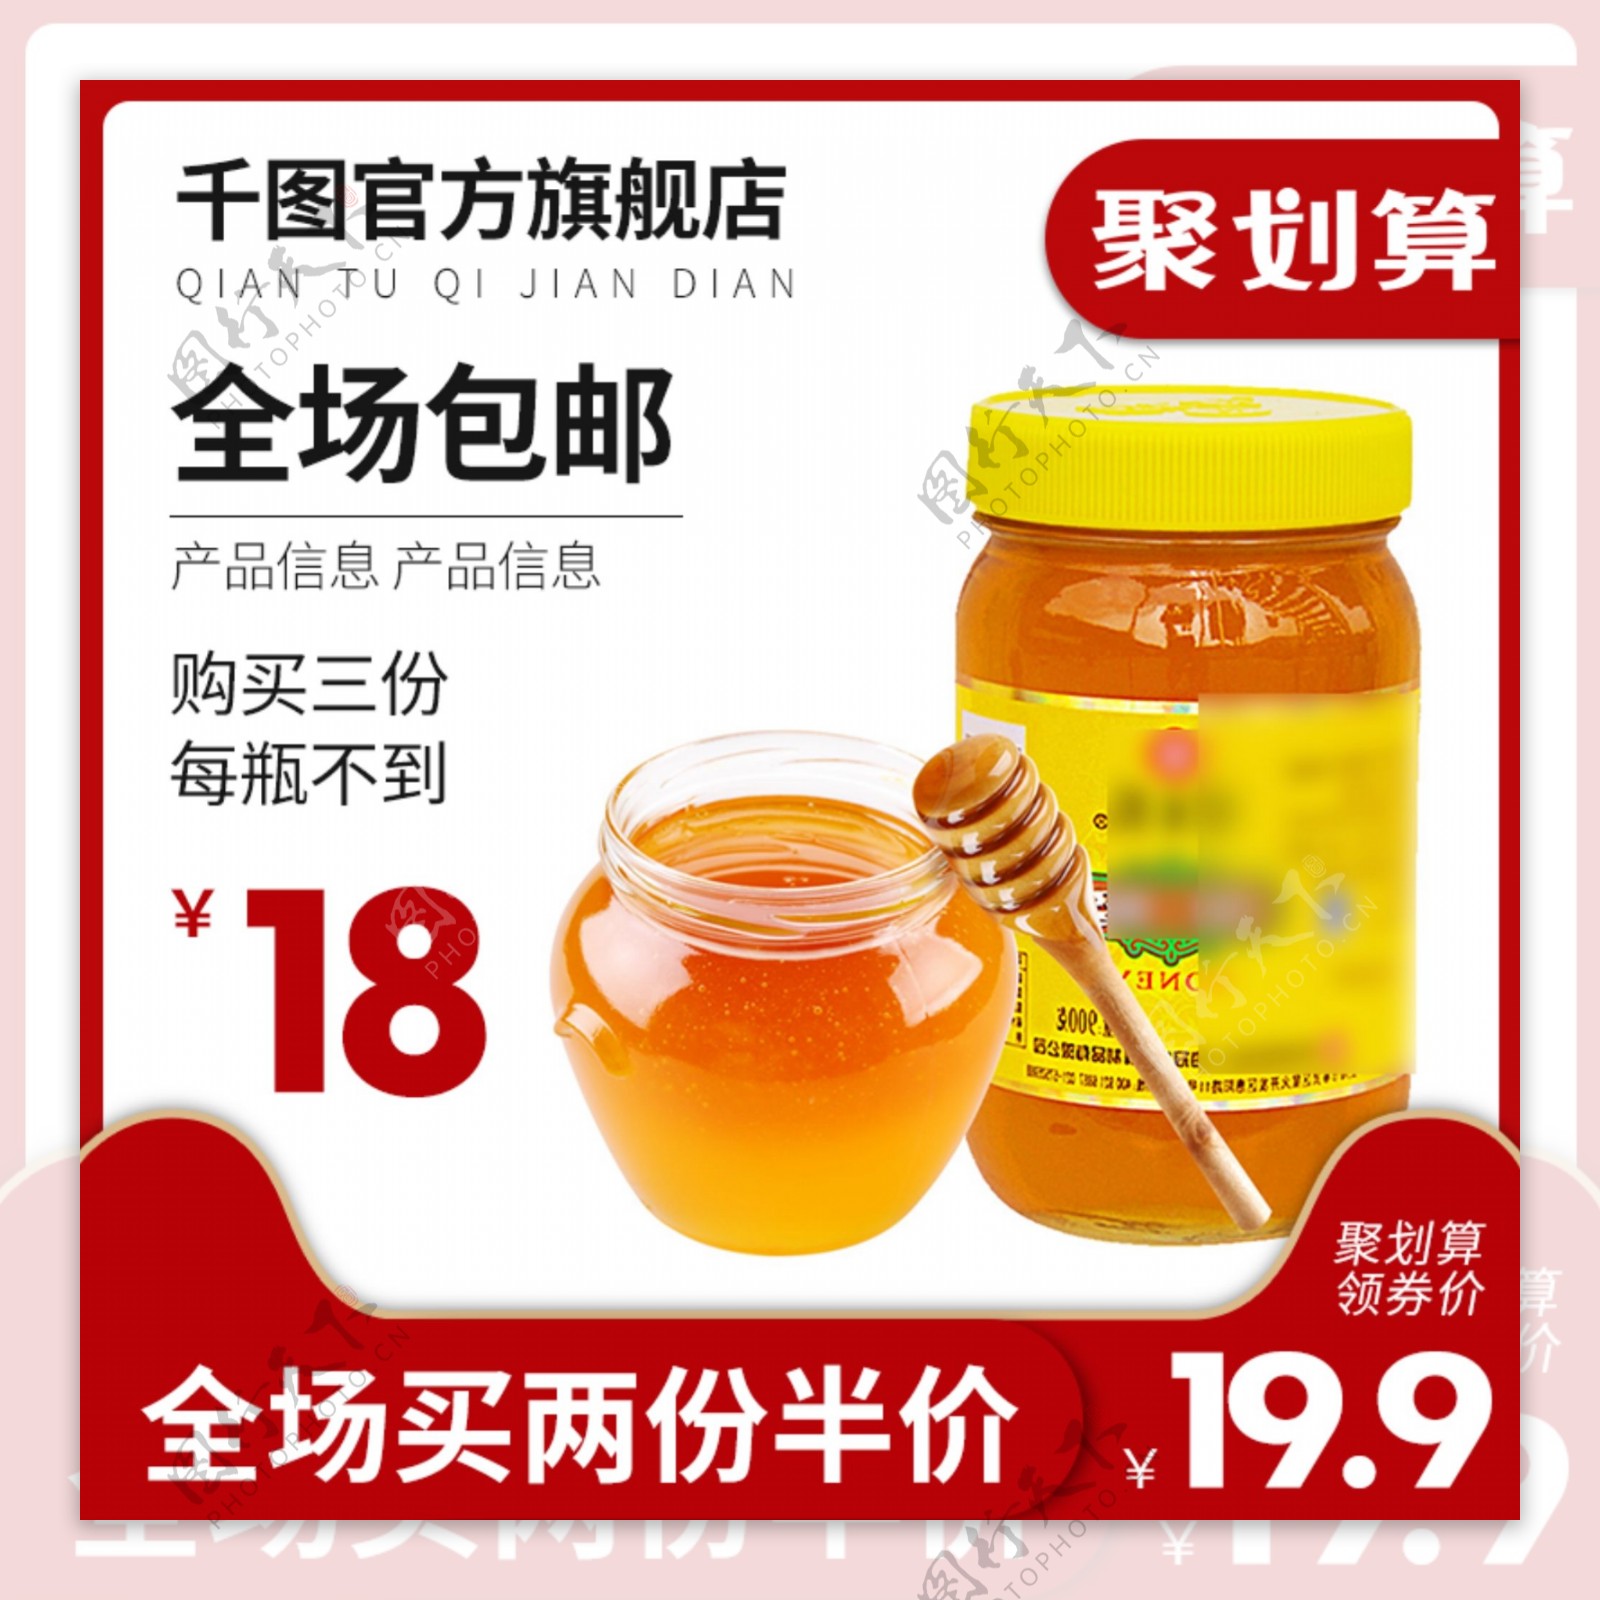 蜂蜜食品茶饮聚划算主图车图